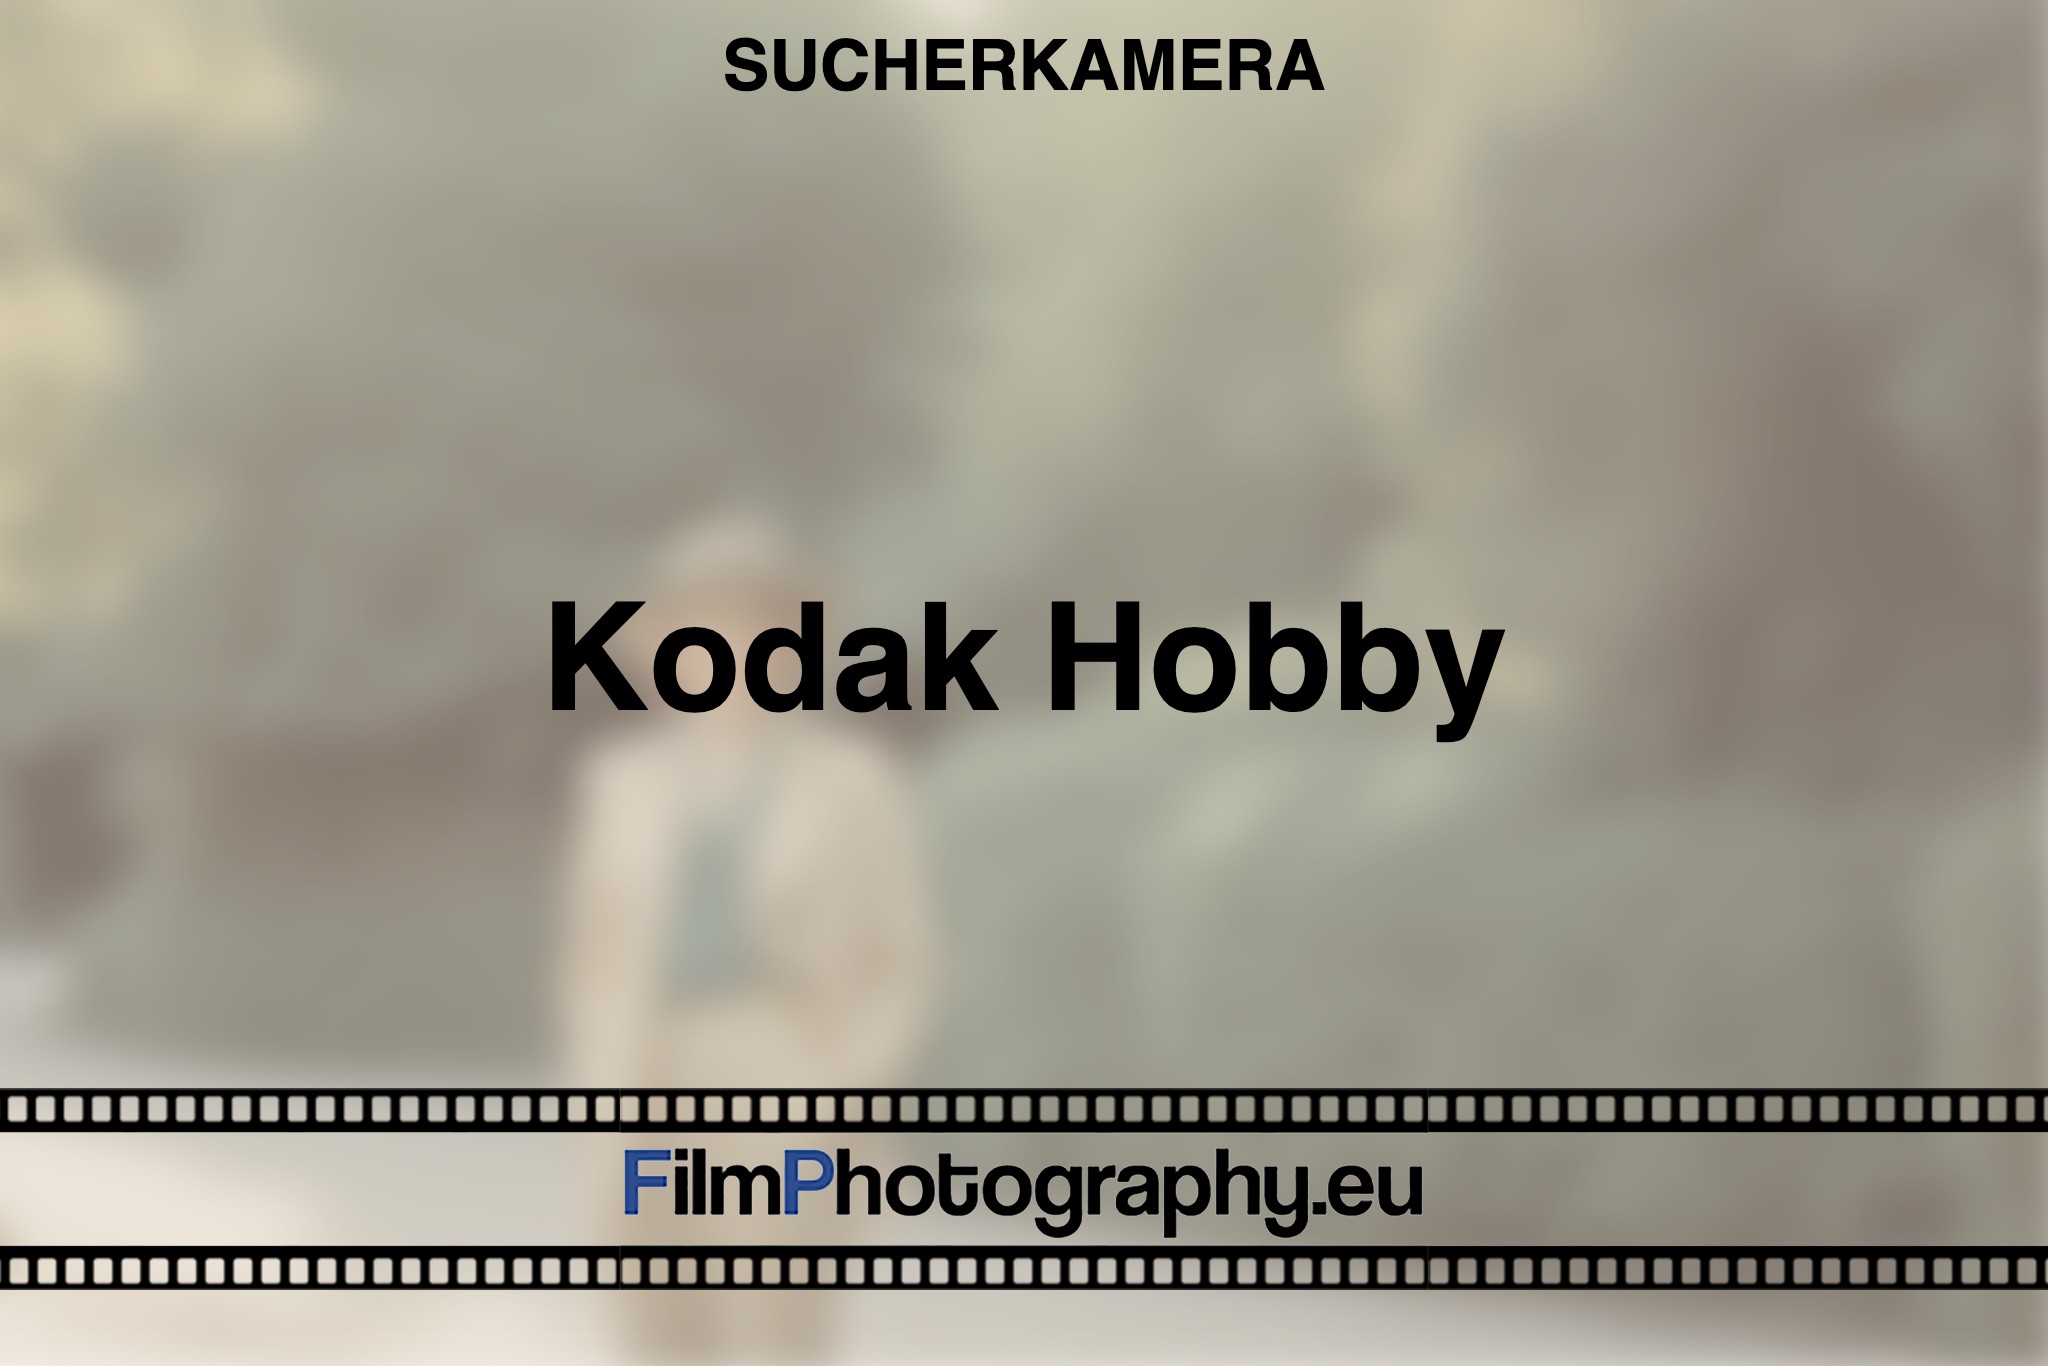 kodak-hobby-sucherkamera-bnv